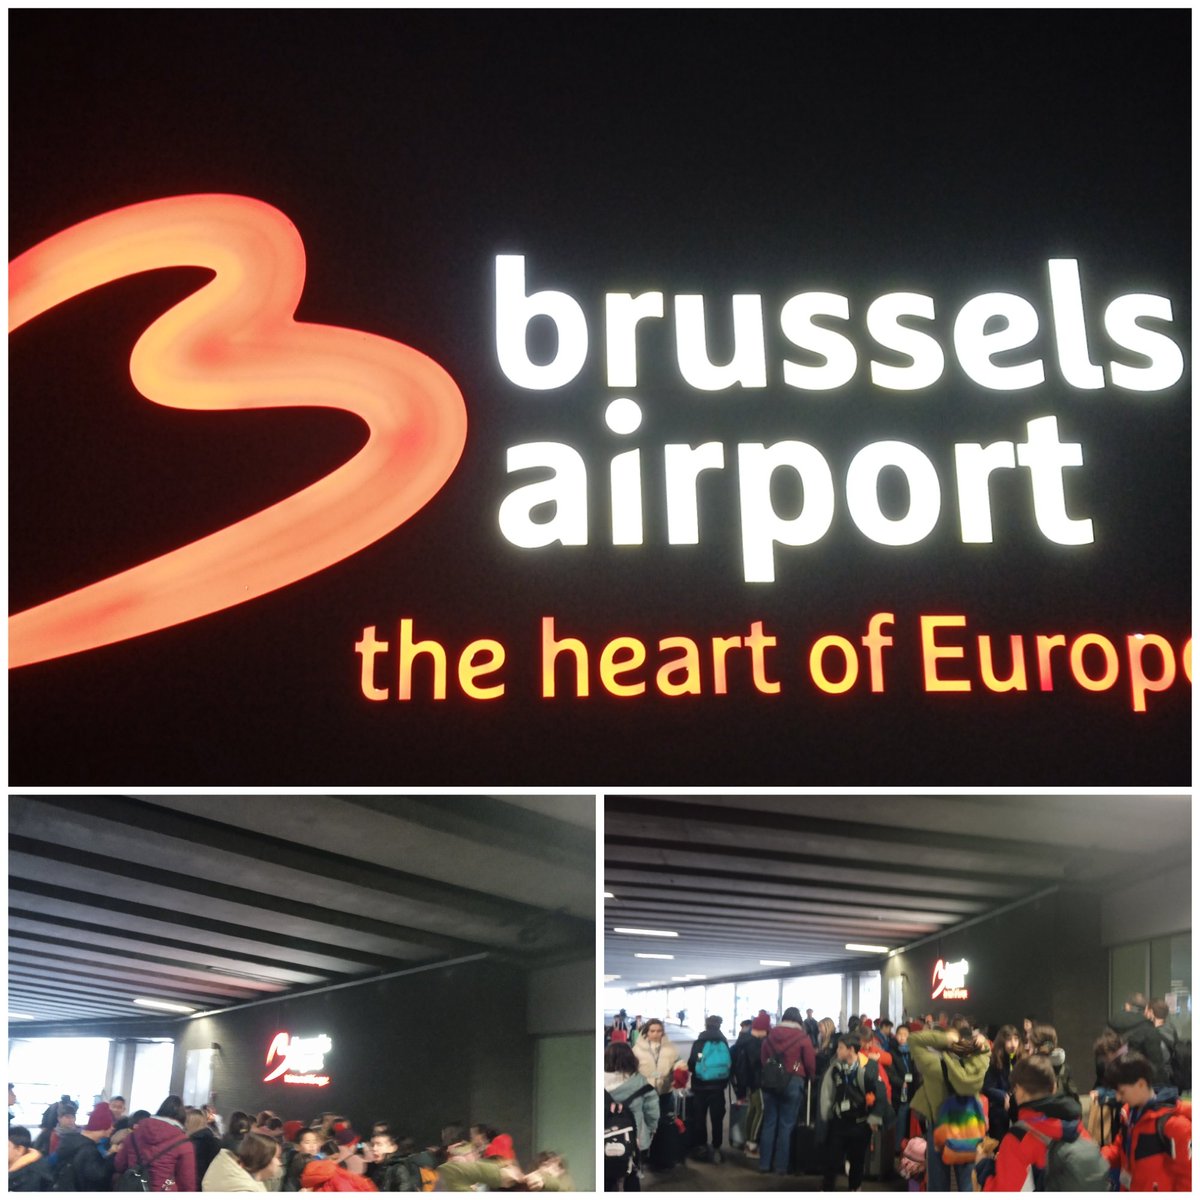 L'alumnat del viatge d'estudis Erasmus a #Bruxelles ja es troba a l'aerport. En hores #volem cap a #Barcelona. @AfaFedacSantAnd @EscolesFEDAC .